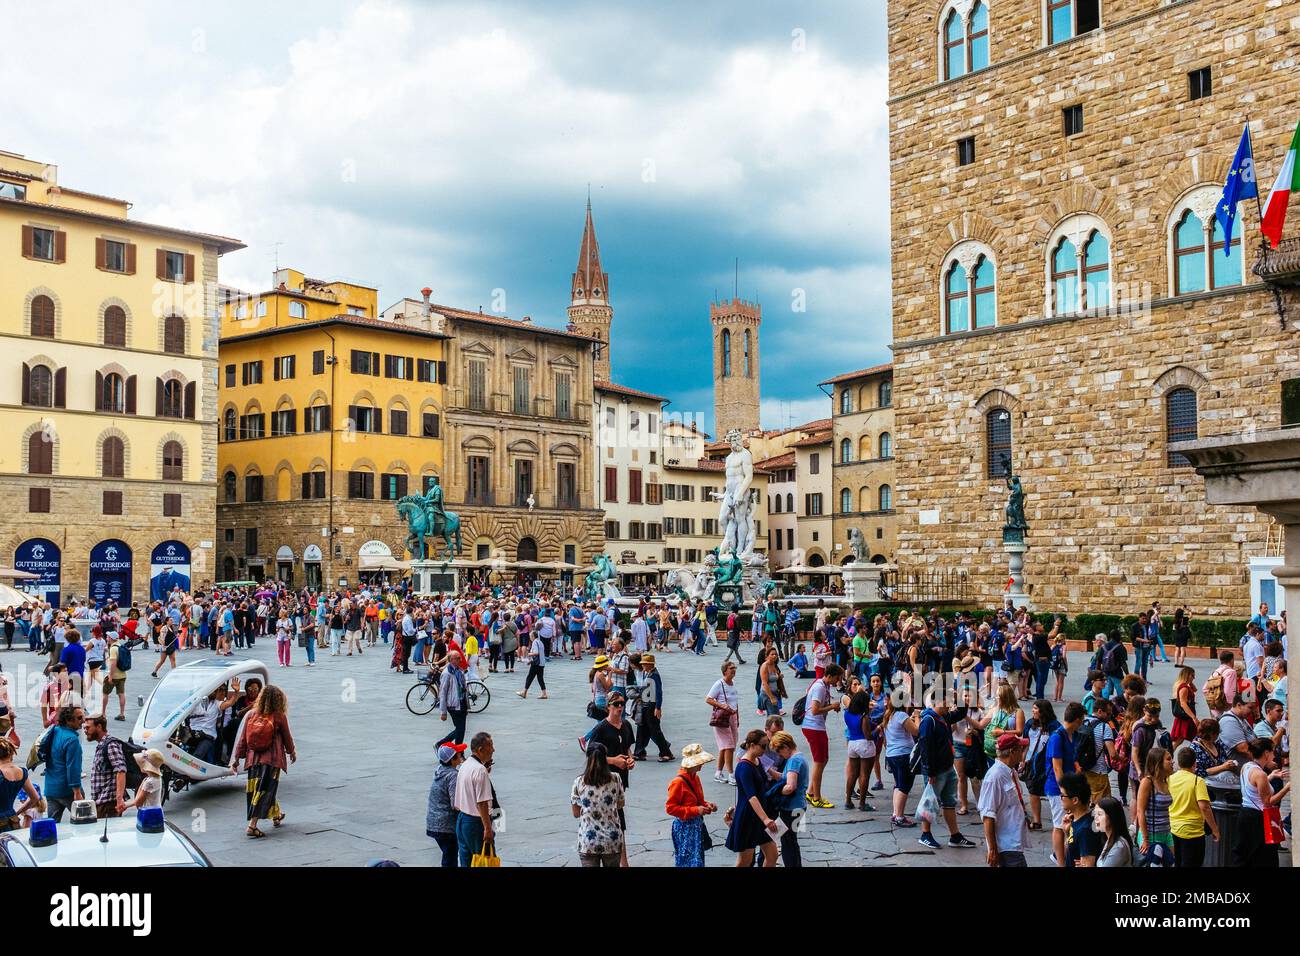 Palazzo Vecchio in Piazza della Signoria Florence, Tuscany, Italy Stock Photo